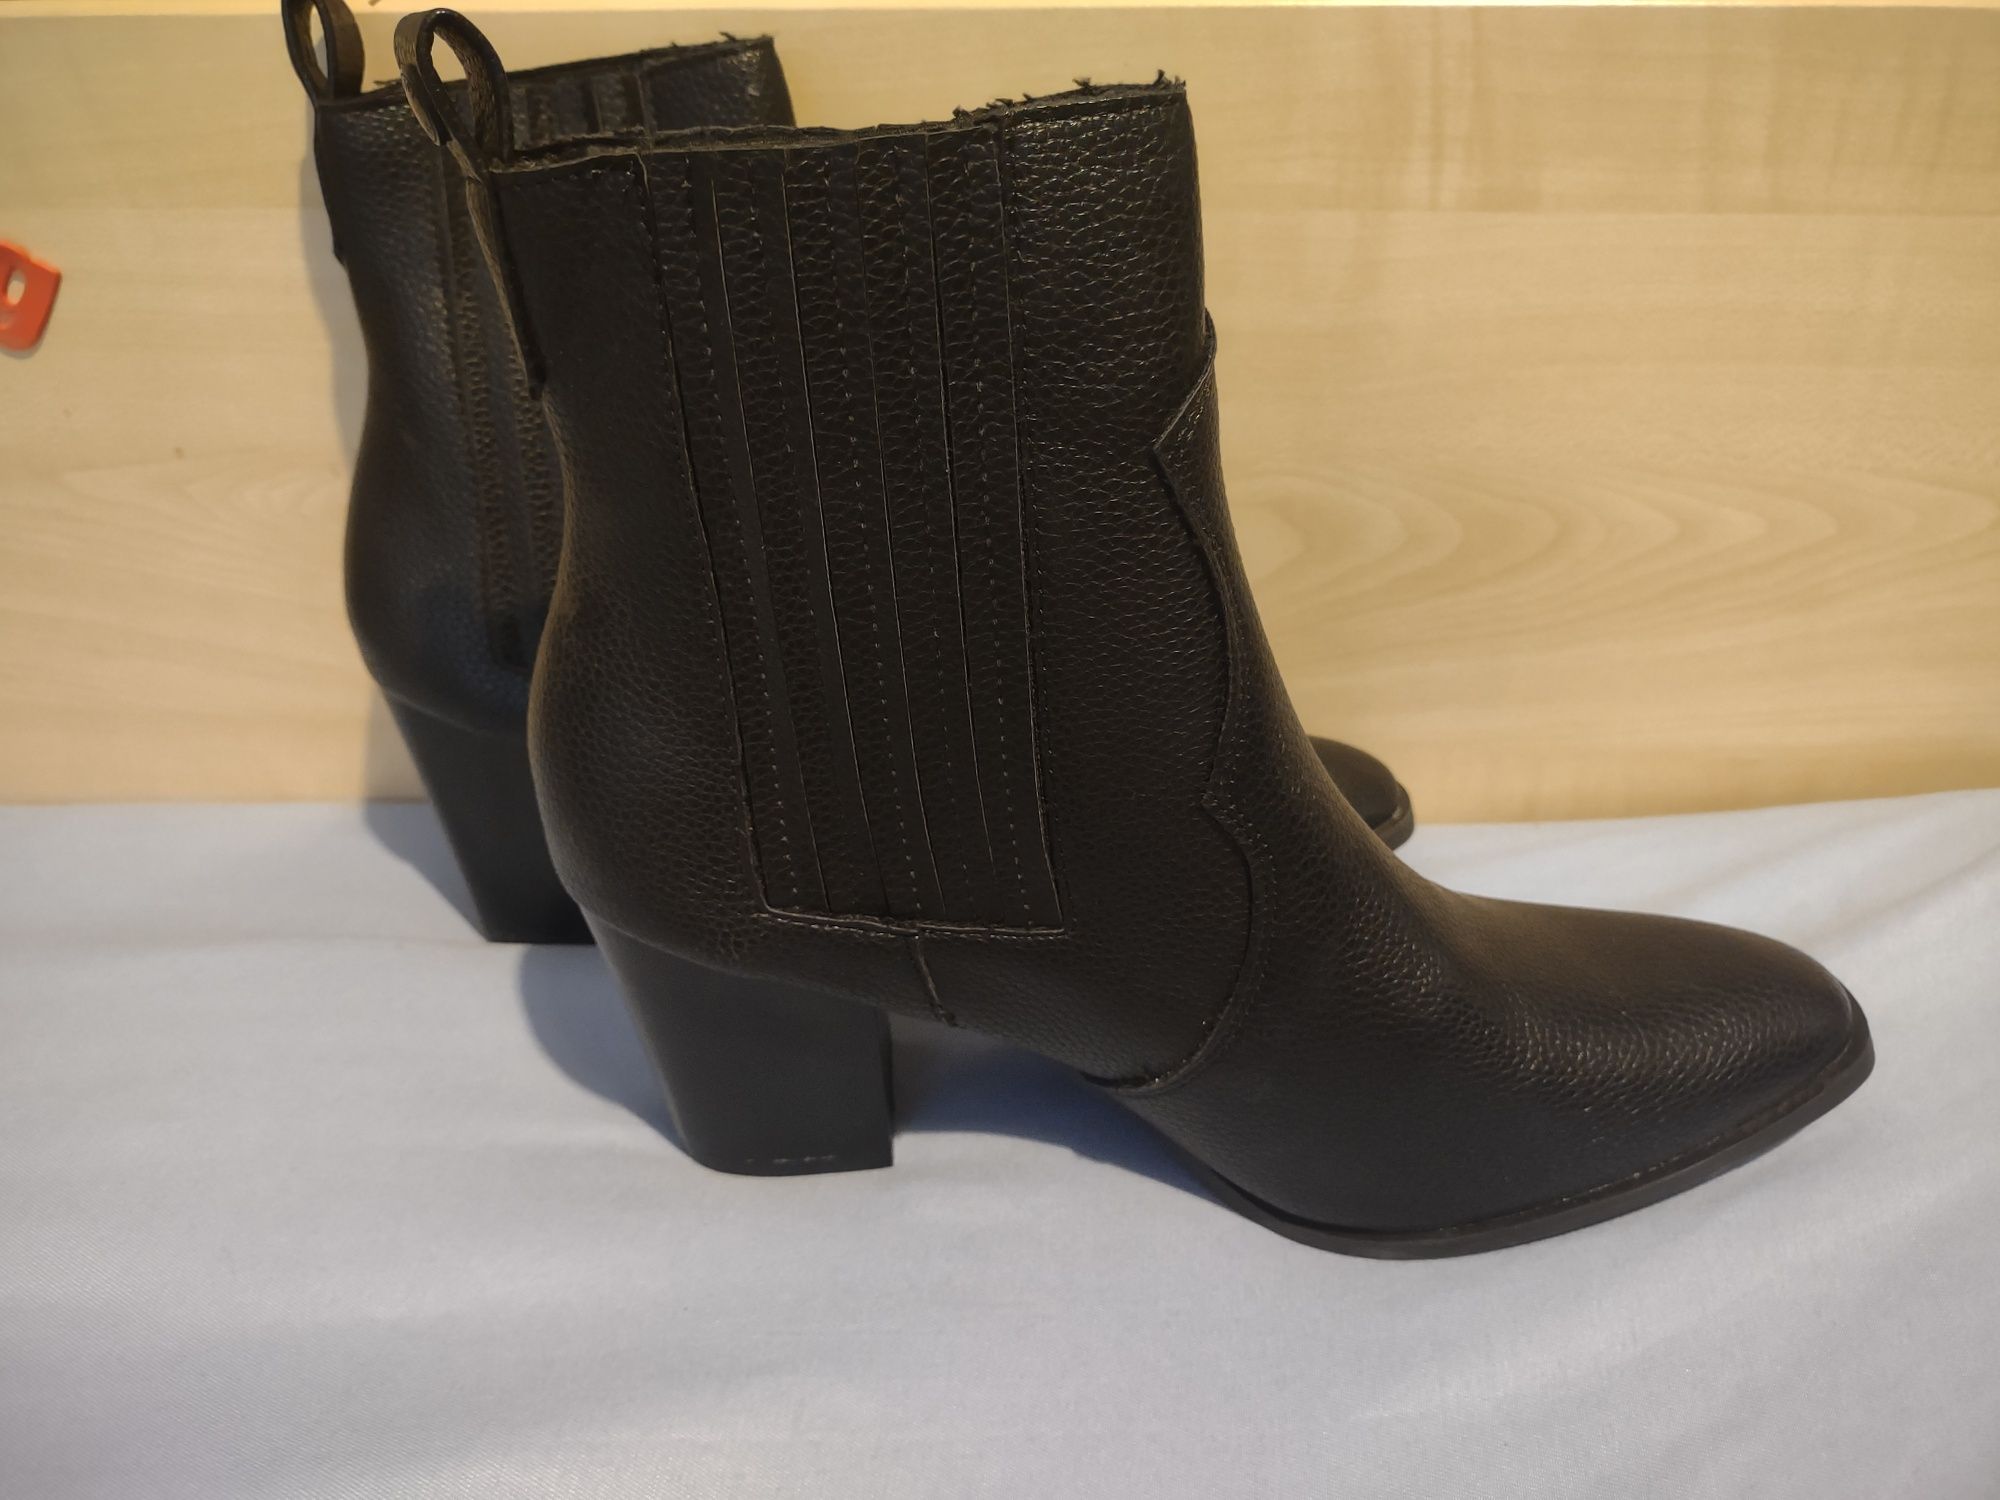 Czarne damskie buty kozaki botki rozmiar 40  nowe na zimę